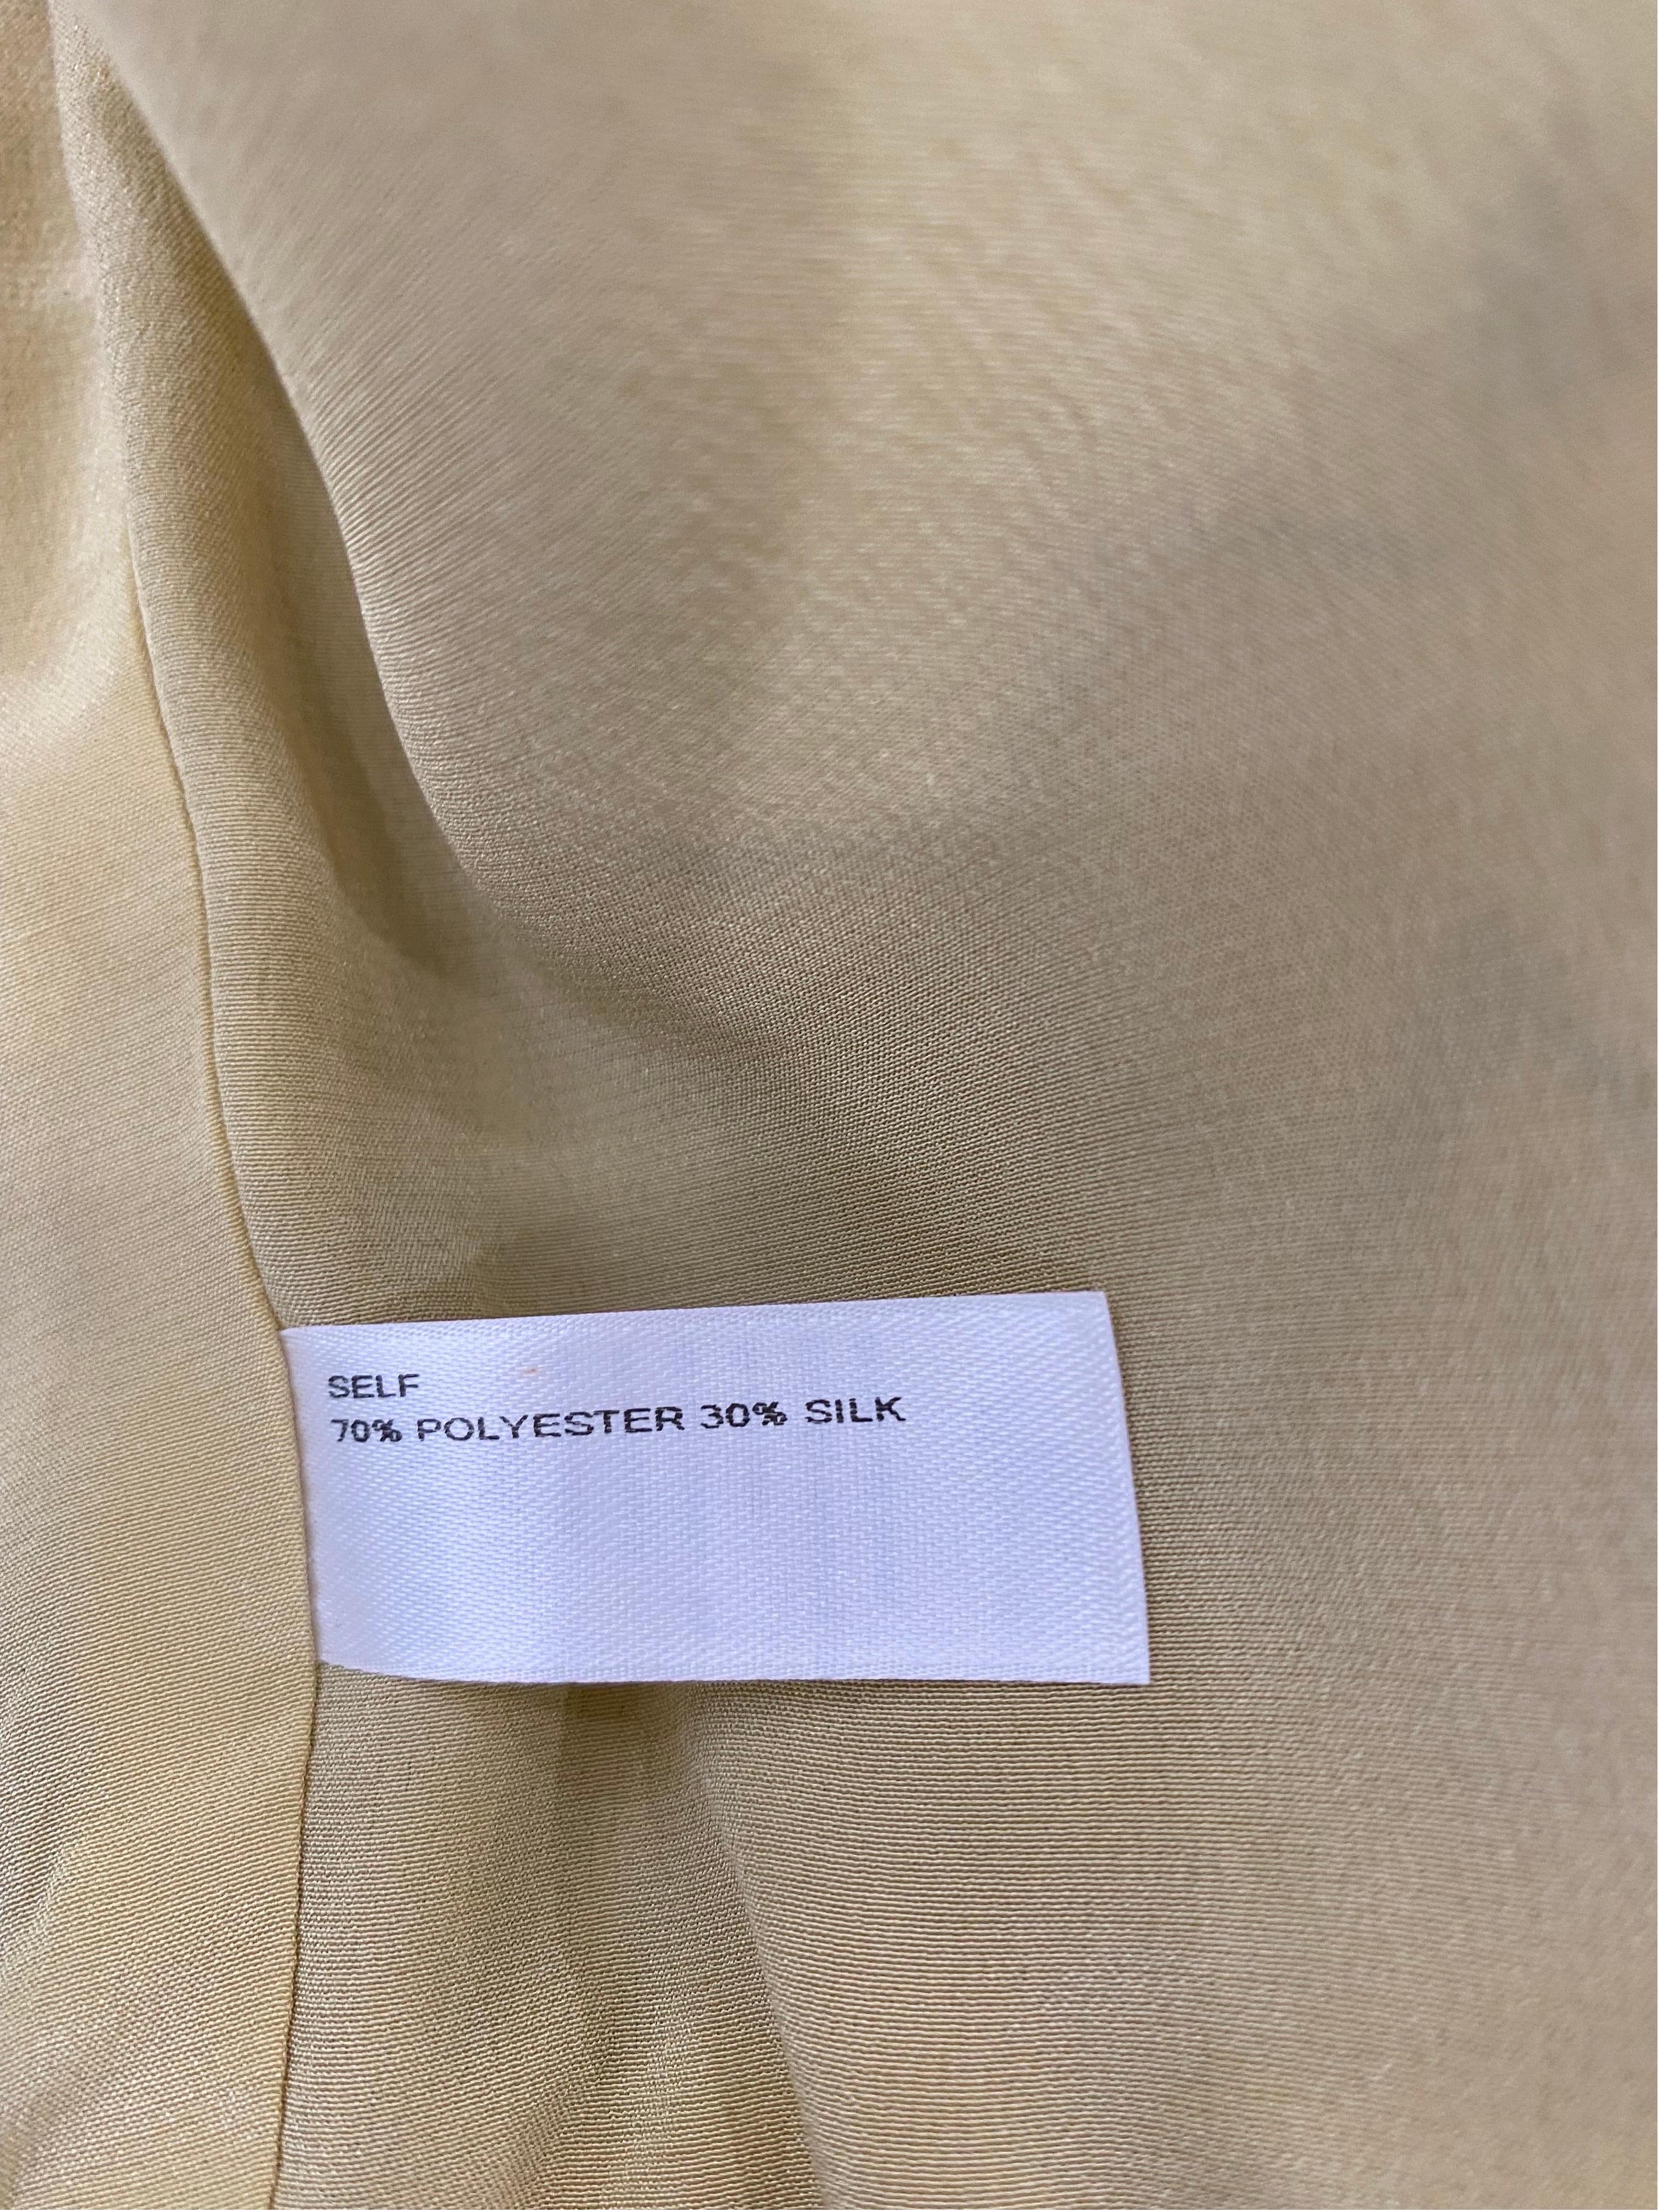 Carolina Herrera Mustard Beaded Silk Sleeveless Dress with Jacket- Sz 10 9